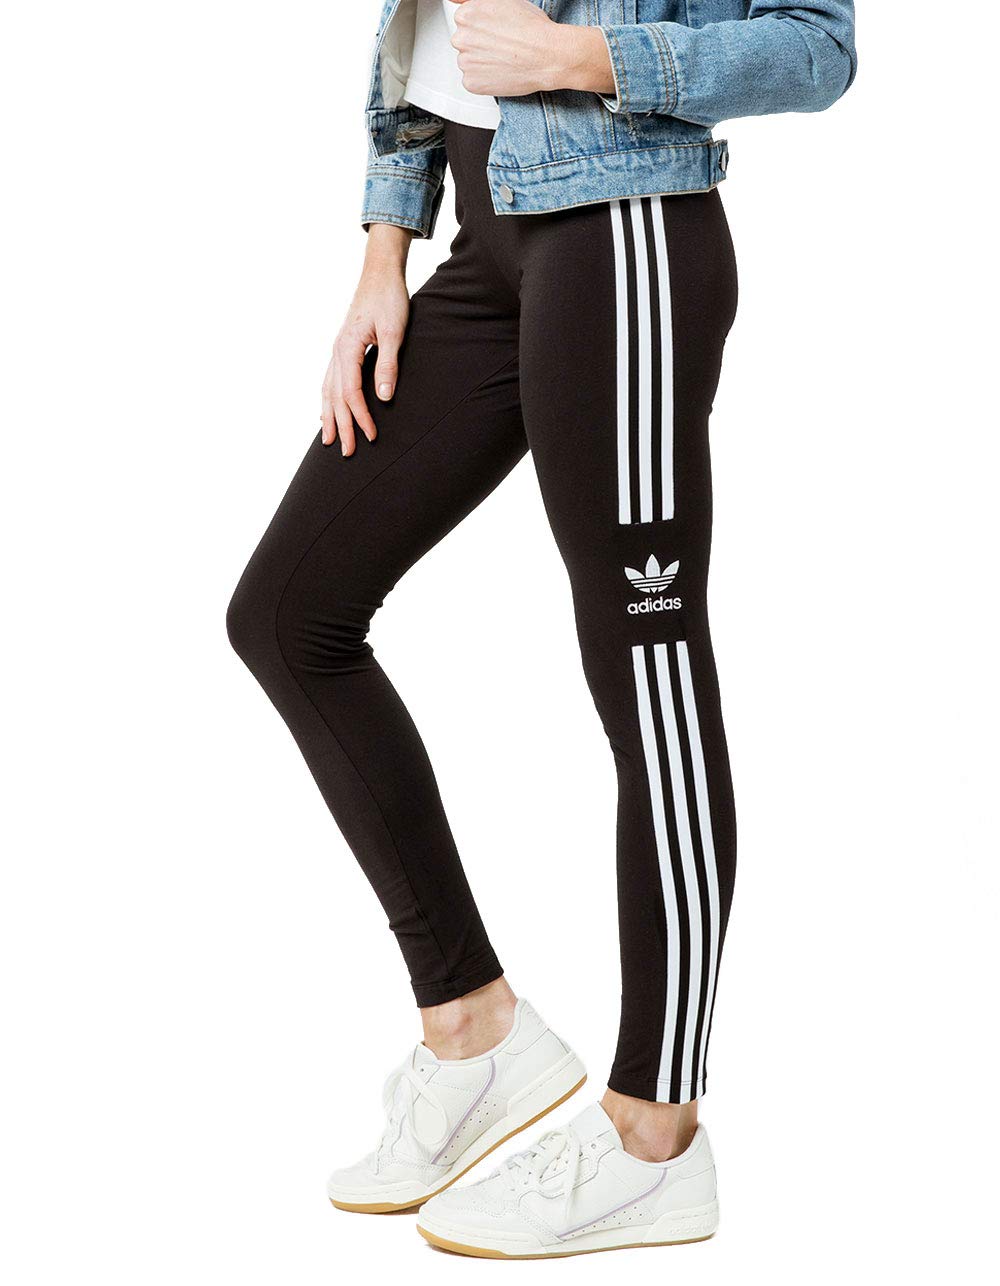 史低价！adidas阿迪达斯 女士 紧身 运动裤，原价$40.00，现使用折扣码后仅售$12.74